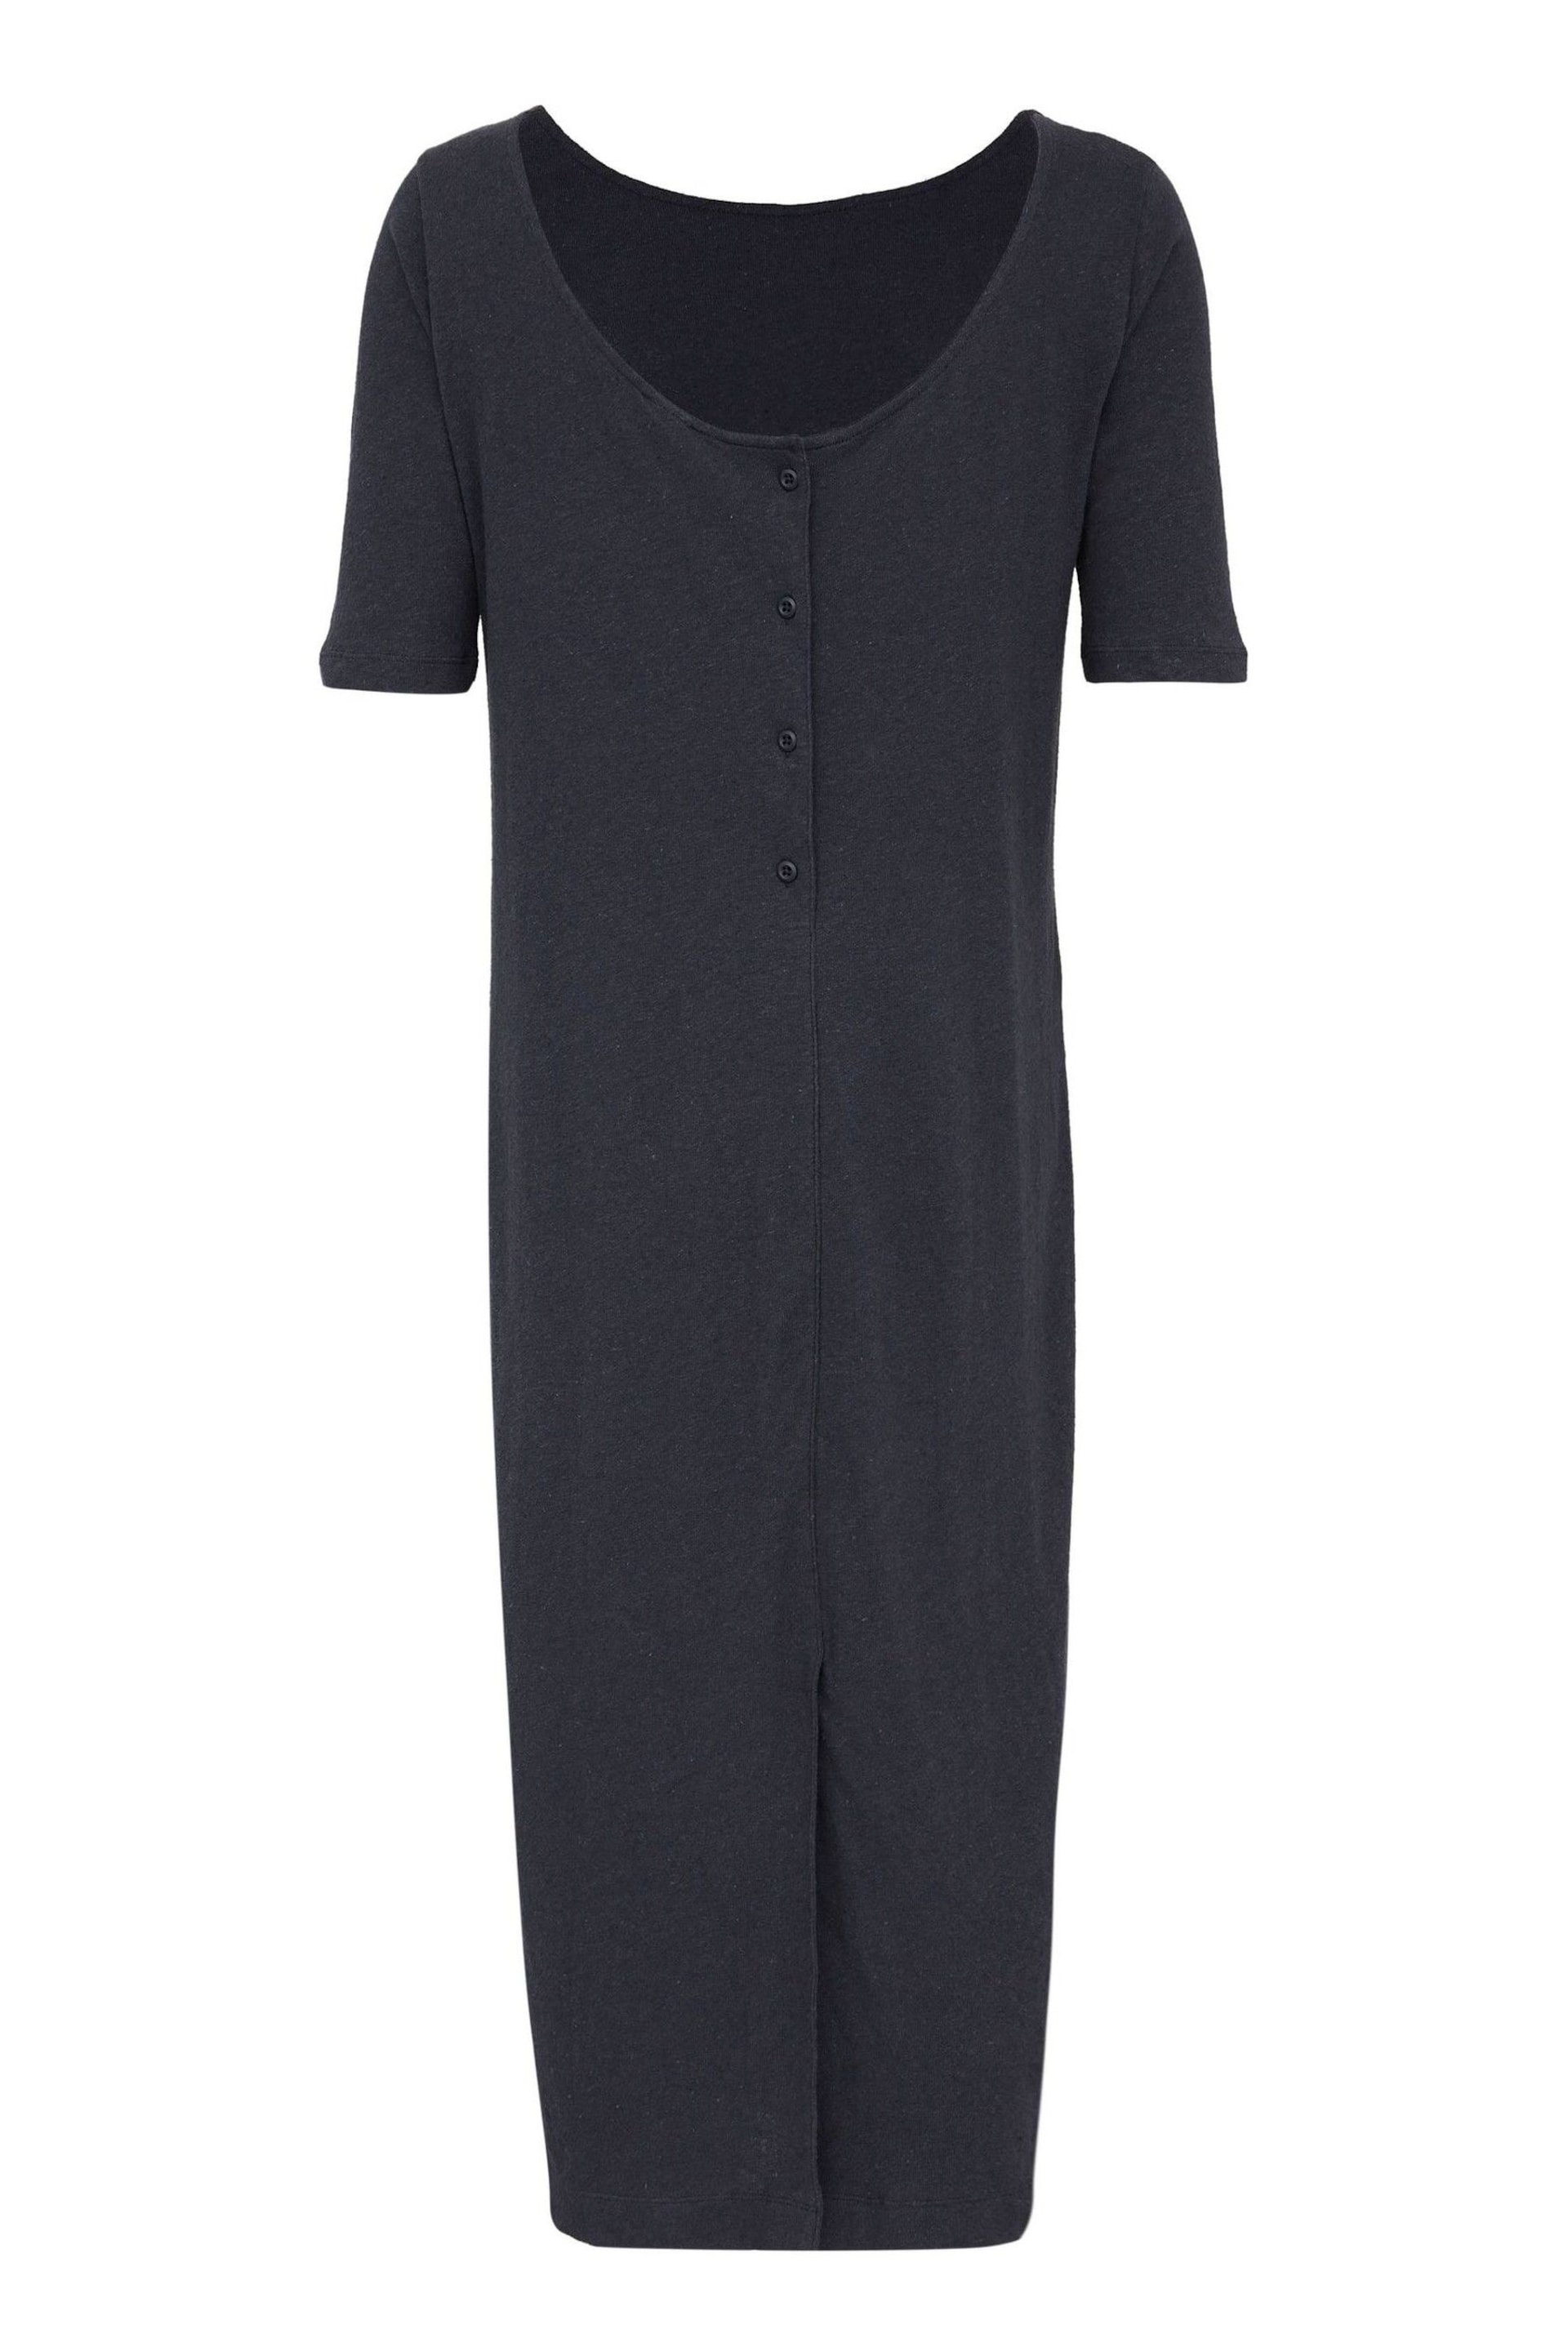 Celtic & Co. Navy Blue Linen/Cotton Button Back Dress - Image 4 of 5